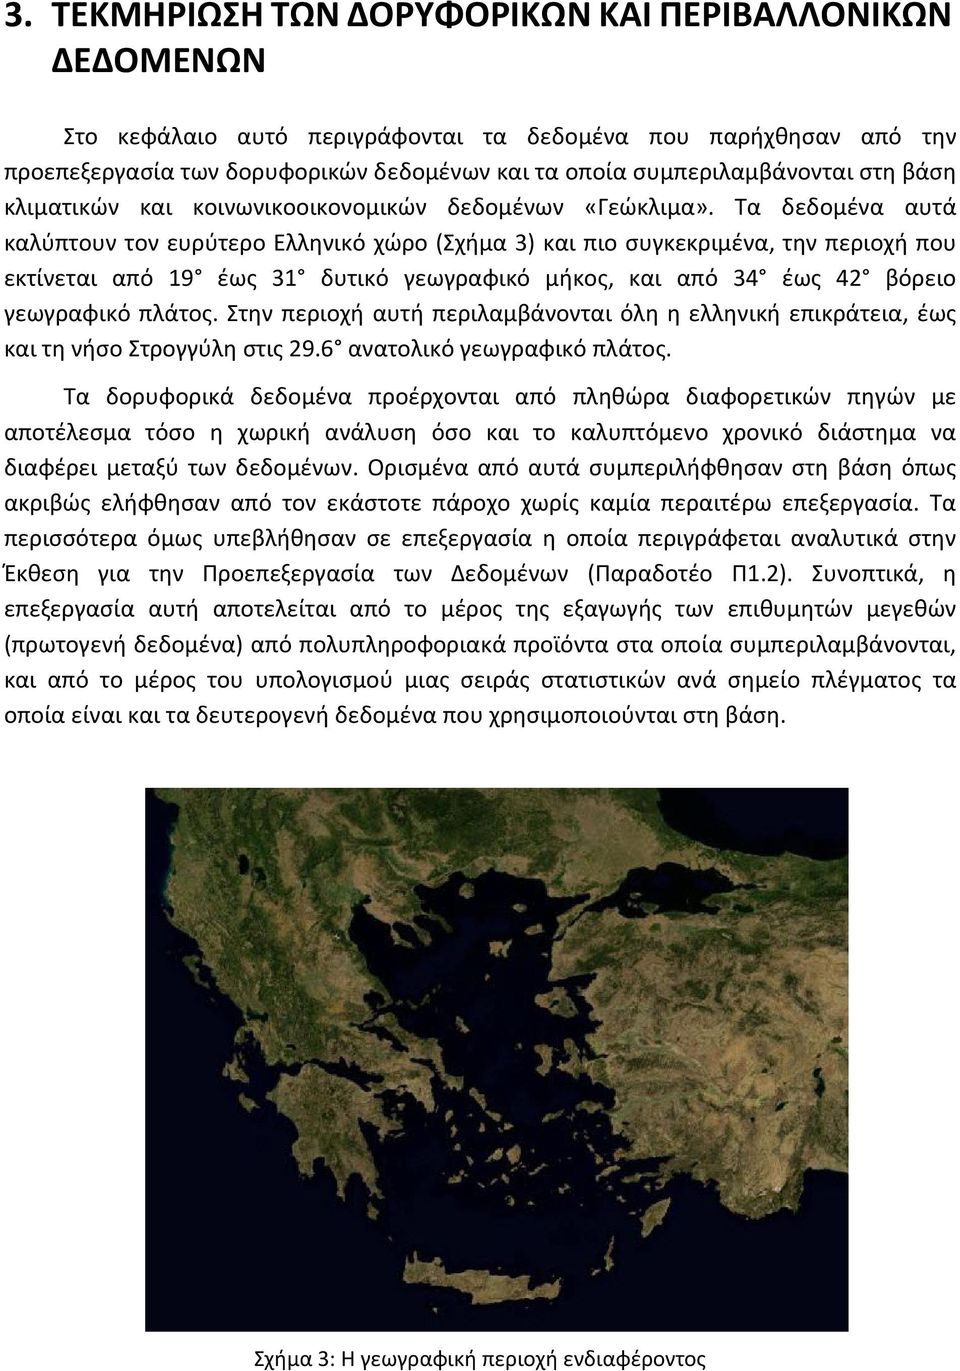 Τα δεδομένα αυτά καλύπτουν τον ευρύτερο Ελληνικό χώρο (Σχήμα 3) και πιο συγκεκριμένα, την περιοχή που εκτίνεται από 19 έως 31 δυτικό γεωγραφικό μήκος, και από 34 έως 42 βόρειο γεωγραφικό πλάτος.